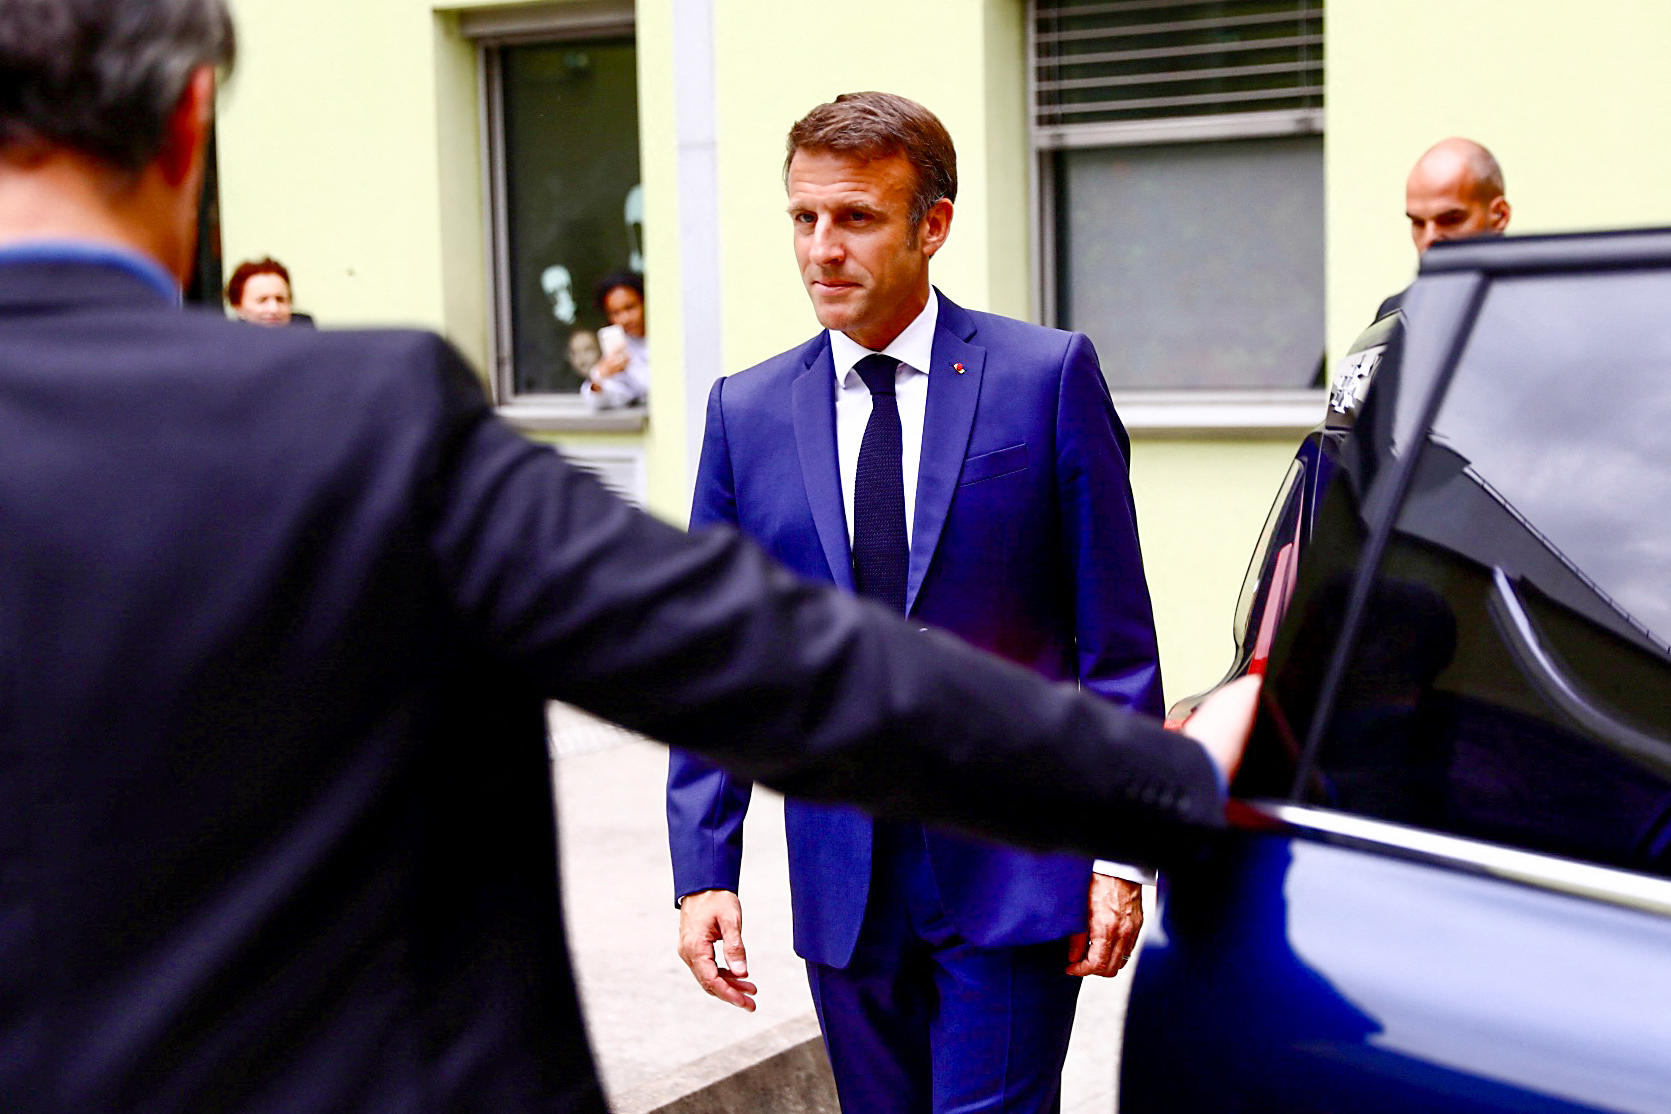 Après sa visite aux enfants hospitalisés à Grenoble, Emmanuel Macron rencontrera Henri, l'étudiant de 24 ans qui a permis de stopper l'assaillant d'Annecy. Benoit Lagneux/ POOL/AFP